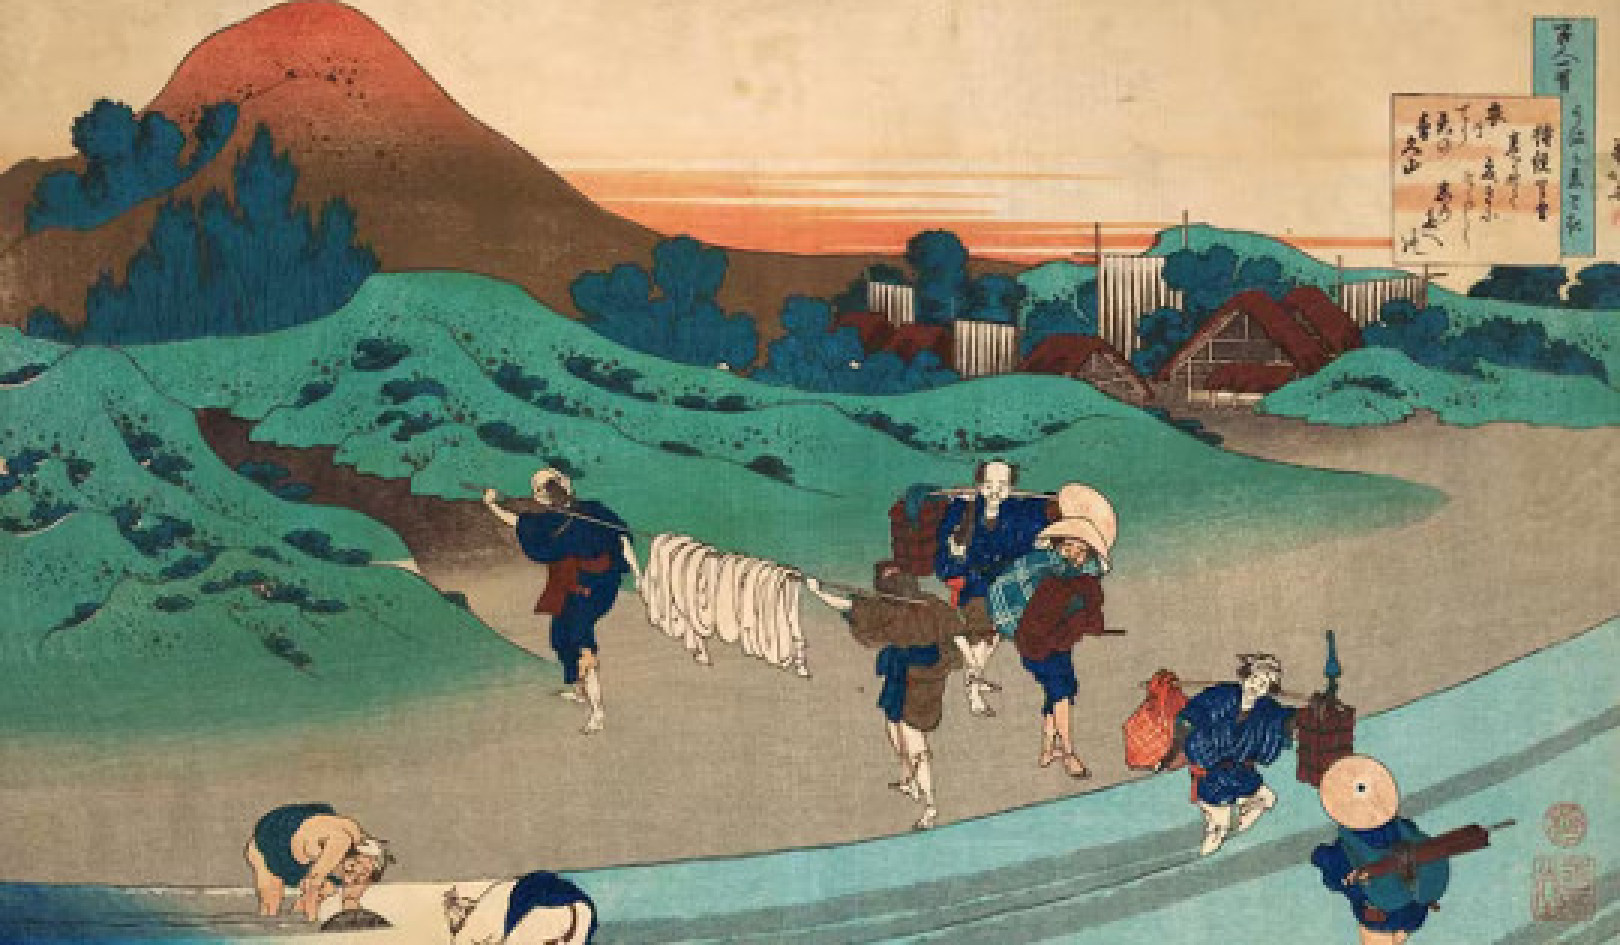 Come secoli di autoisolamento hanno trasformato il Giappone in una società sostenibile